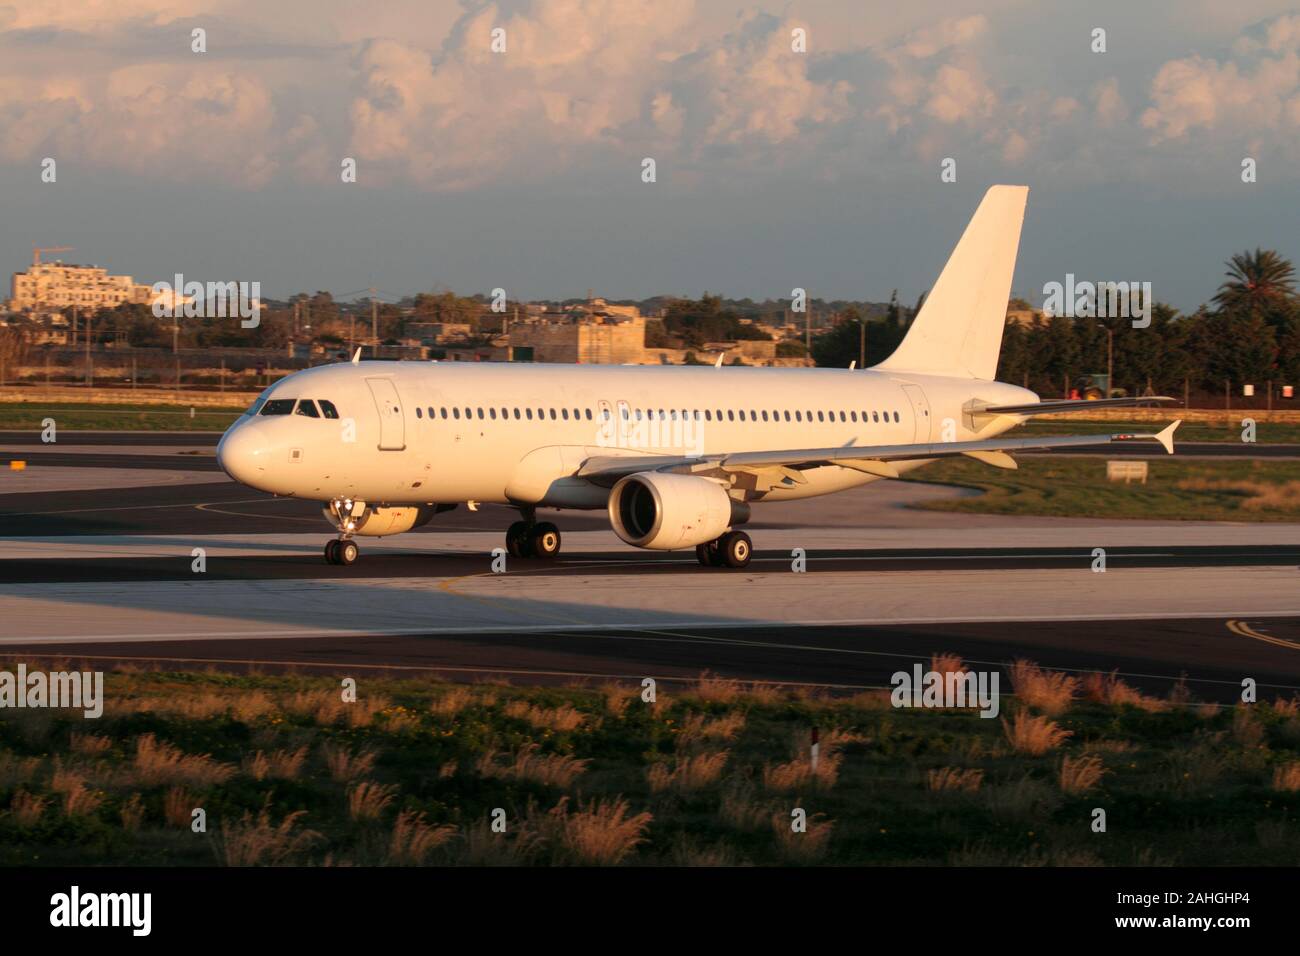 Viaggi aerei e aviazione civile. Airbus A320, aereo passeggeri non contrassegnato sulla pista al tramonto. Nessun titolo, livrea o logo della compagnia aerea visibile. Foto Stock